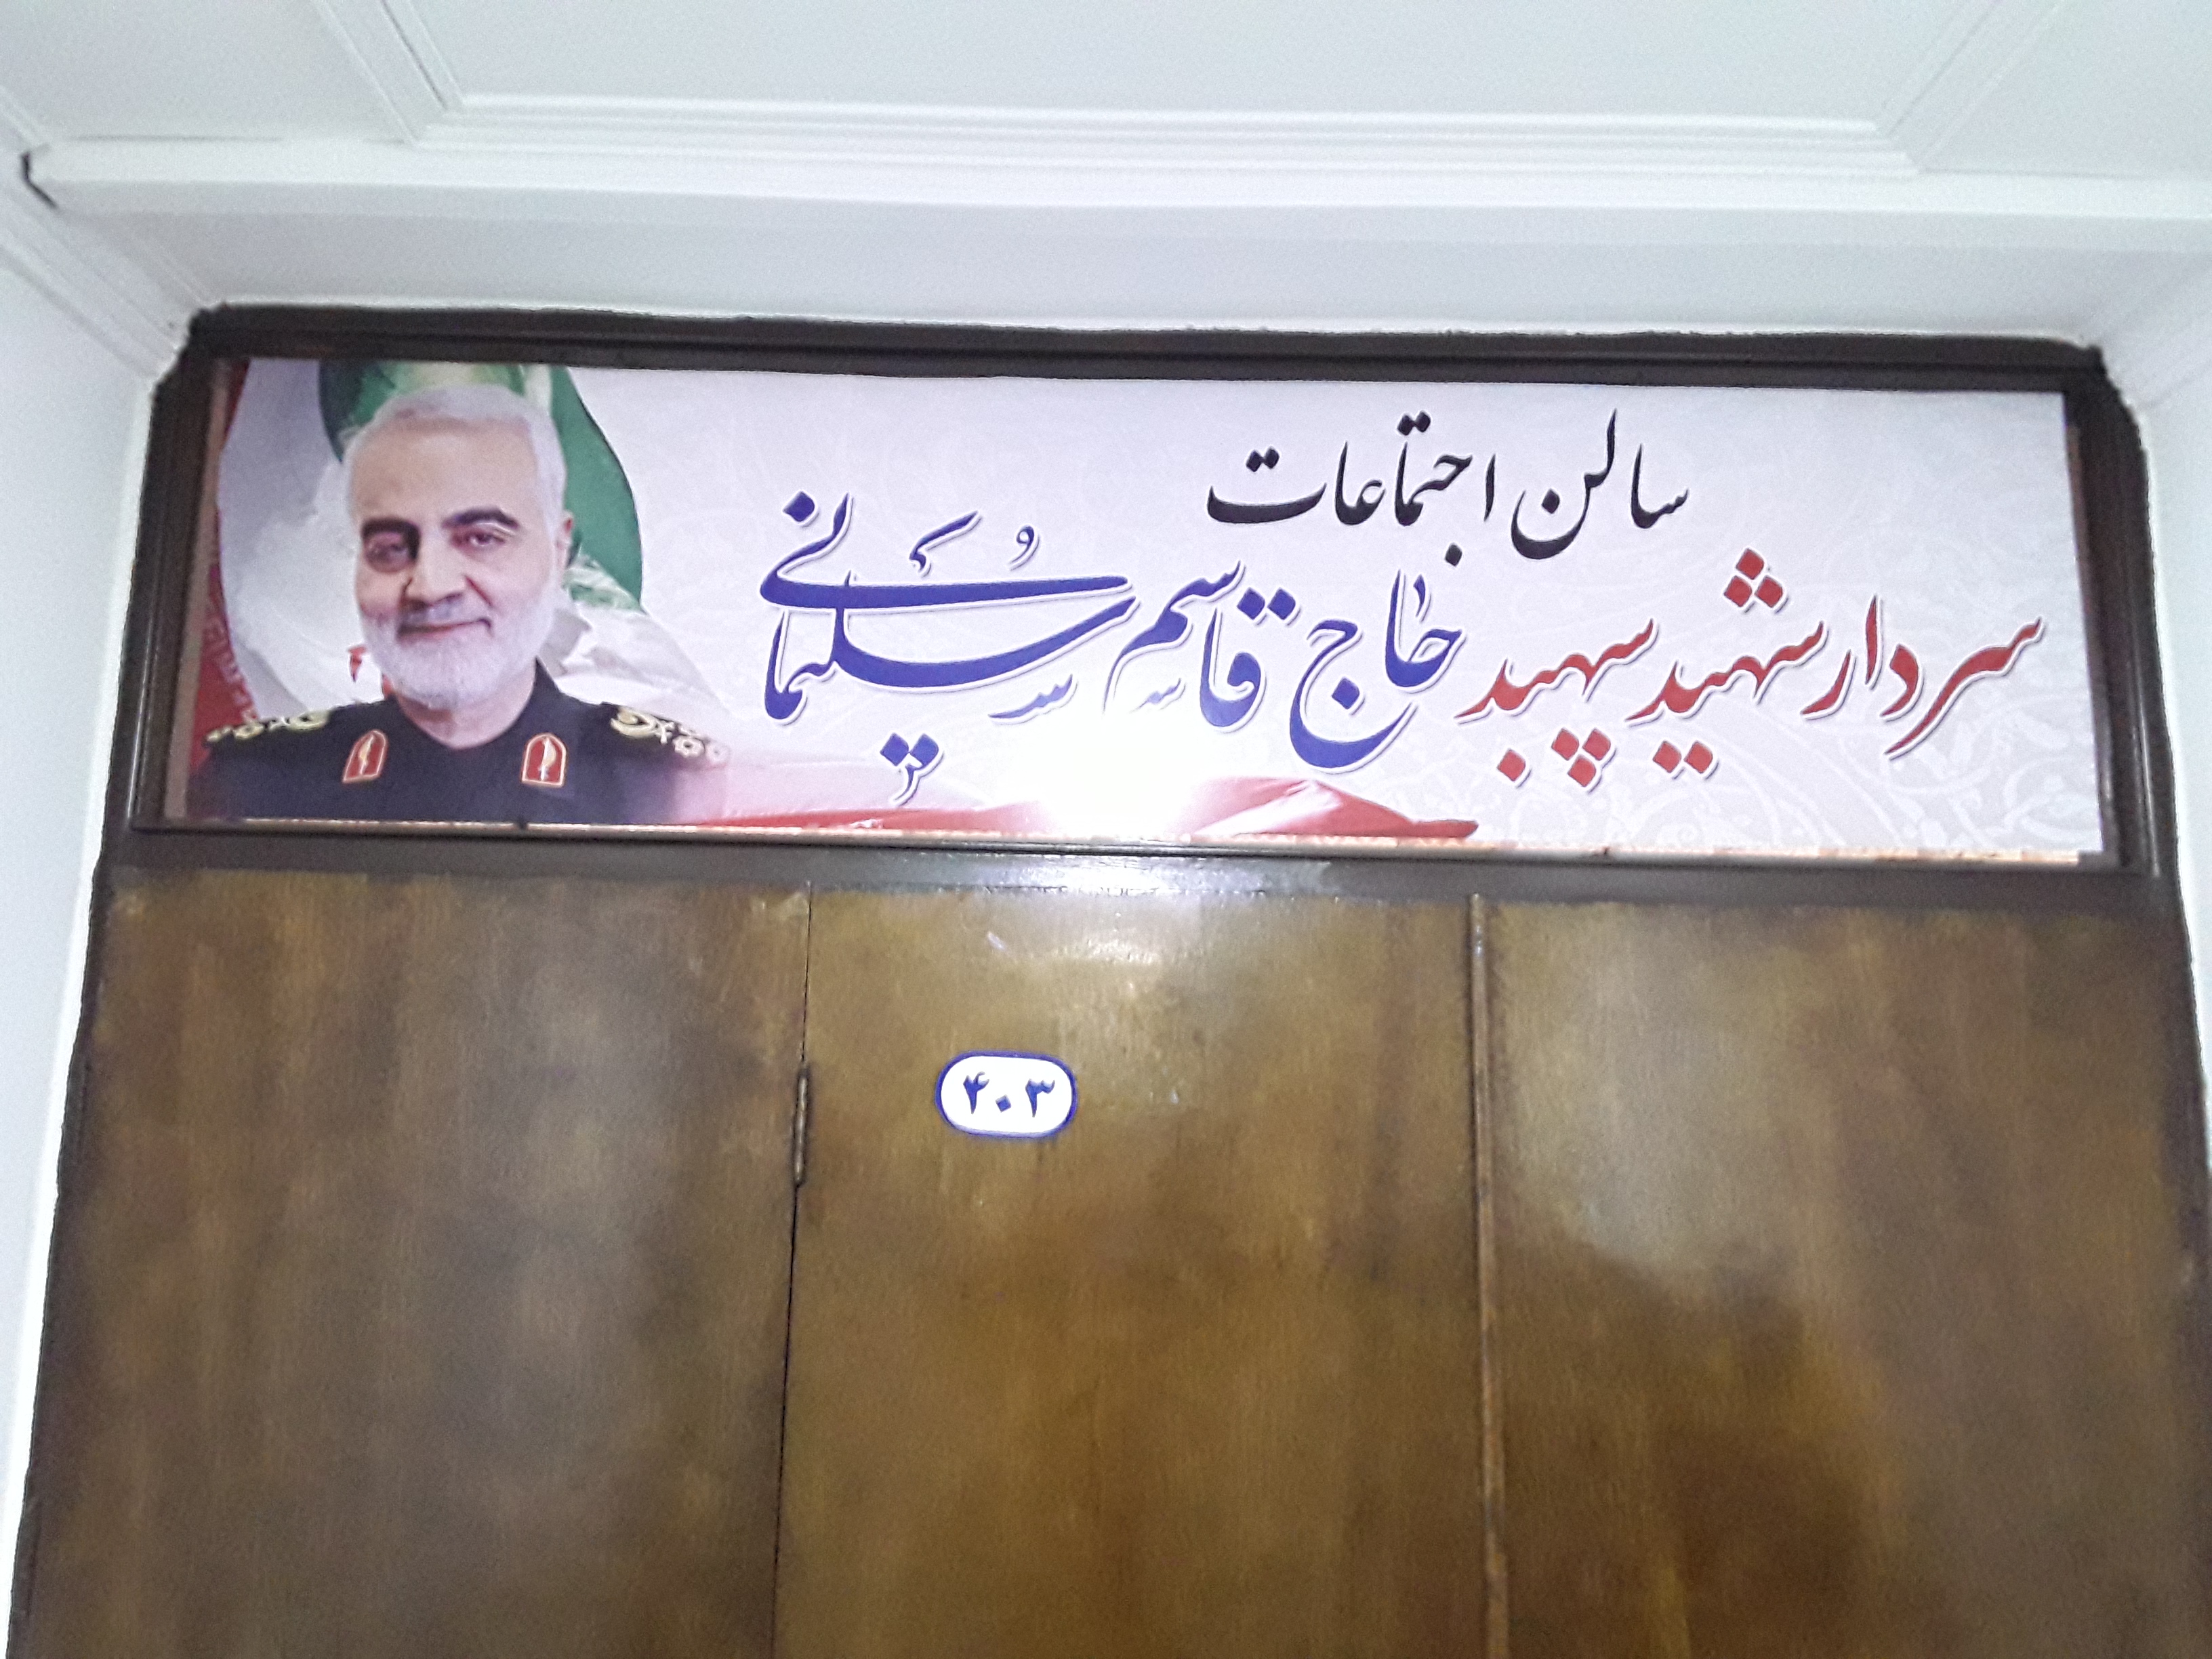 سالن اجتماعات اداره کل شیلات مازندران به نام سردارشهید سپهبدحاج قاسم سلیمانی نامگذاری شد.